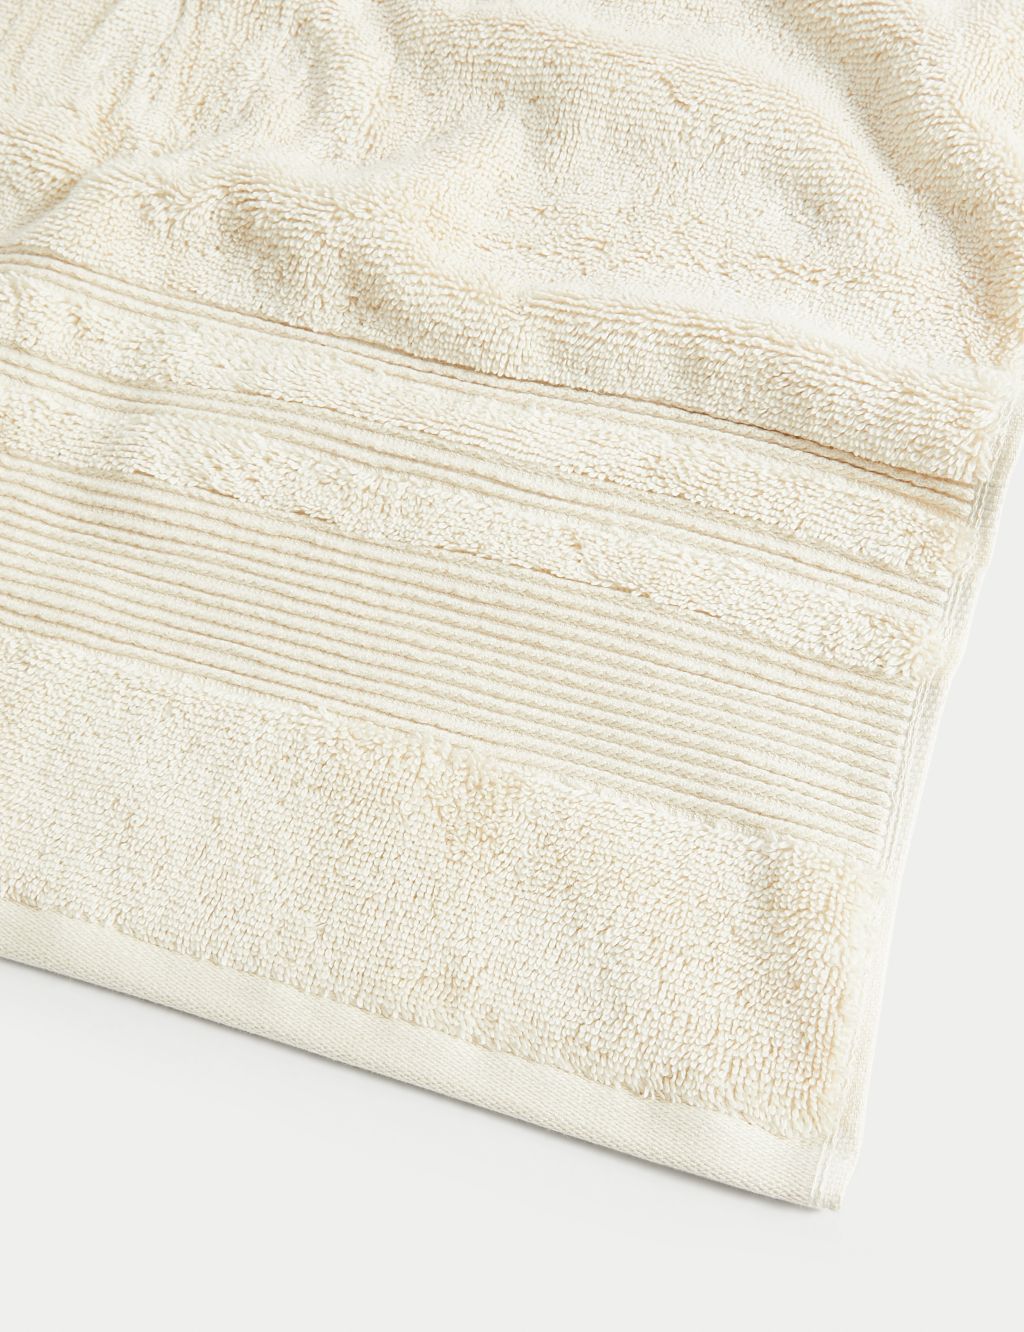 Super Plush Pure Cotton Towel image 4